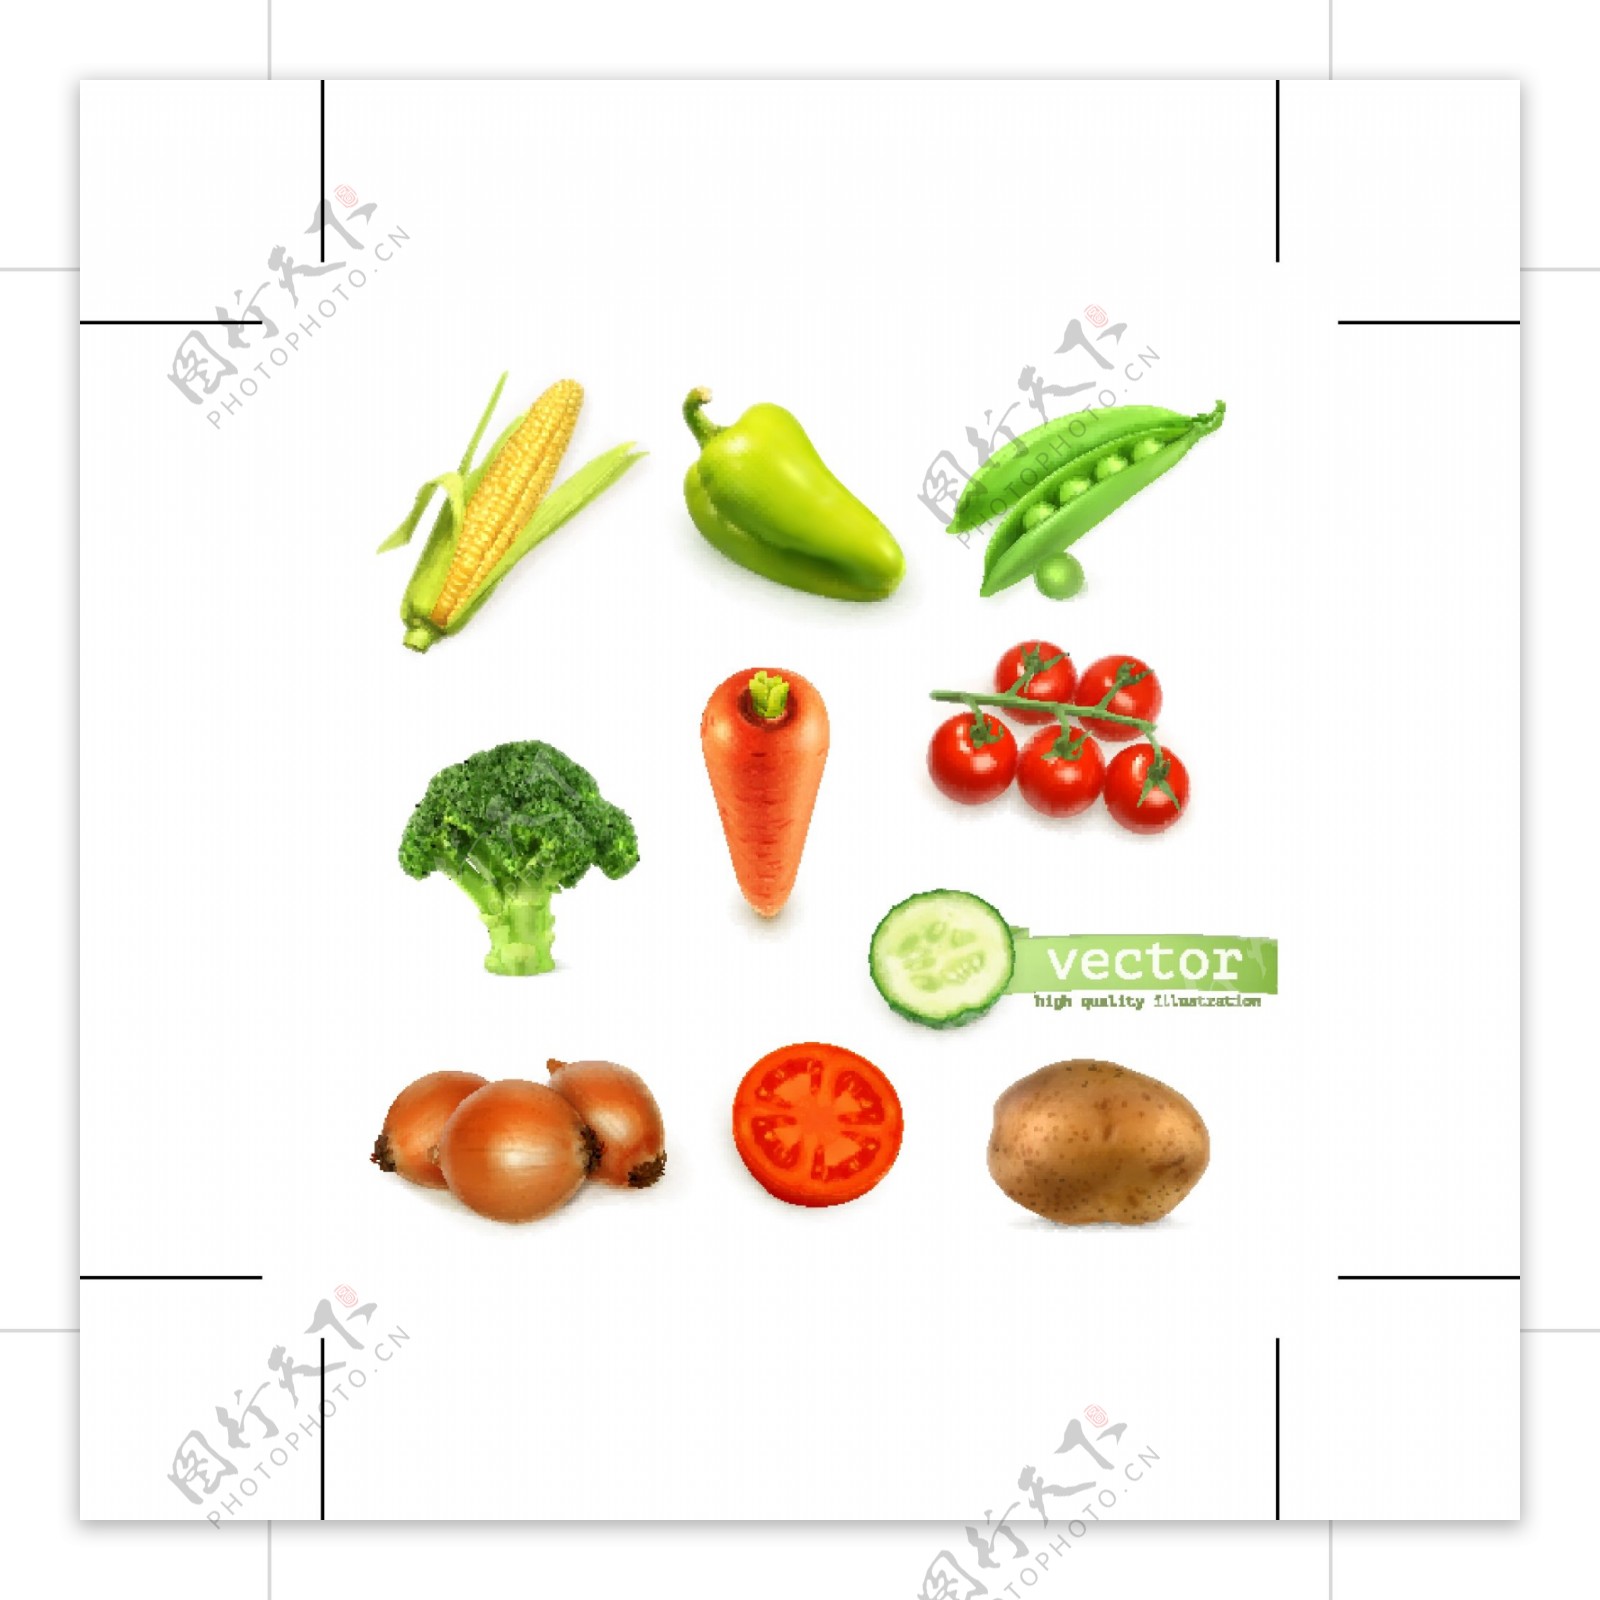 蔬菜图形标识